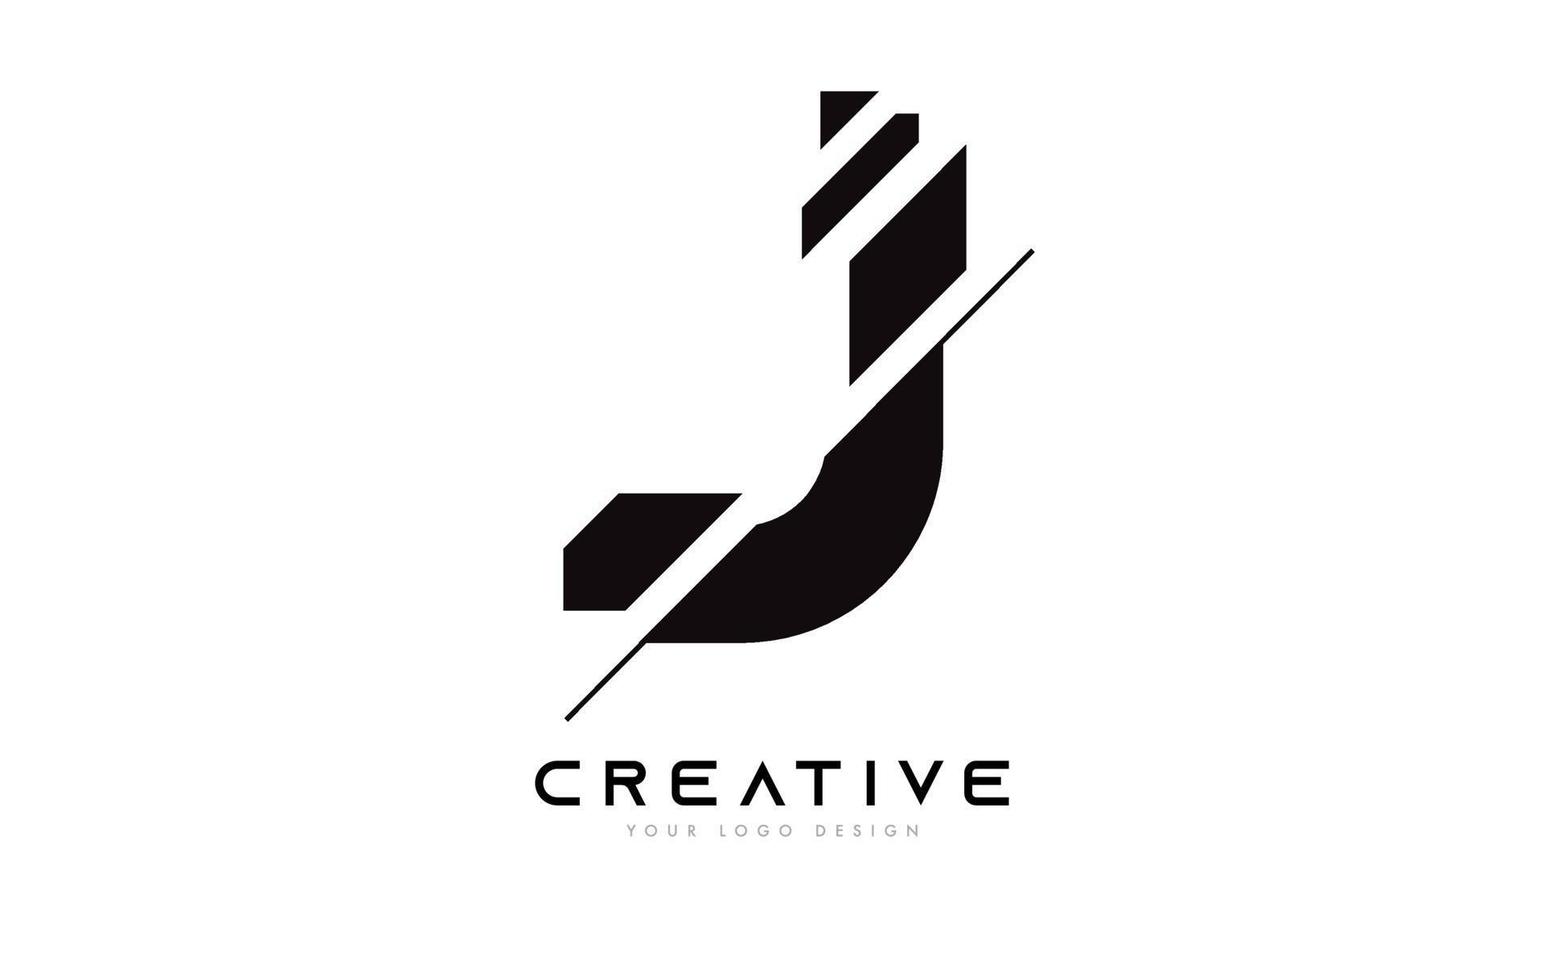 design de ícone de logotipo de letra j fatiada com cores bpreto e branco e fatias cortadas vetor